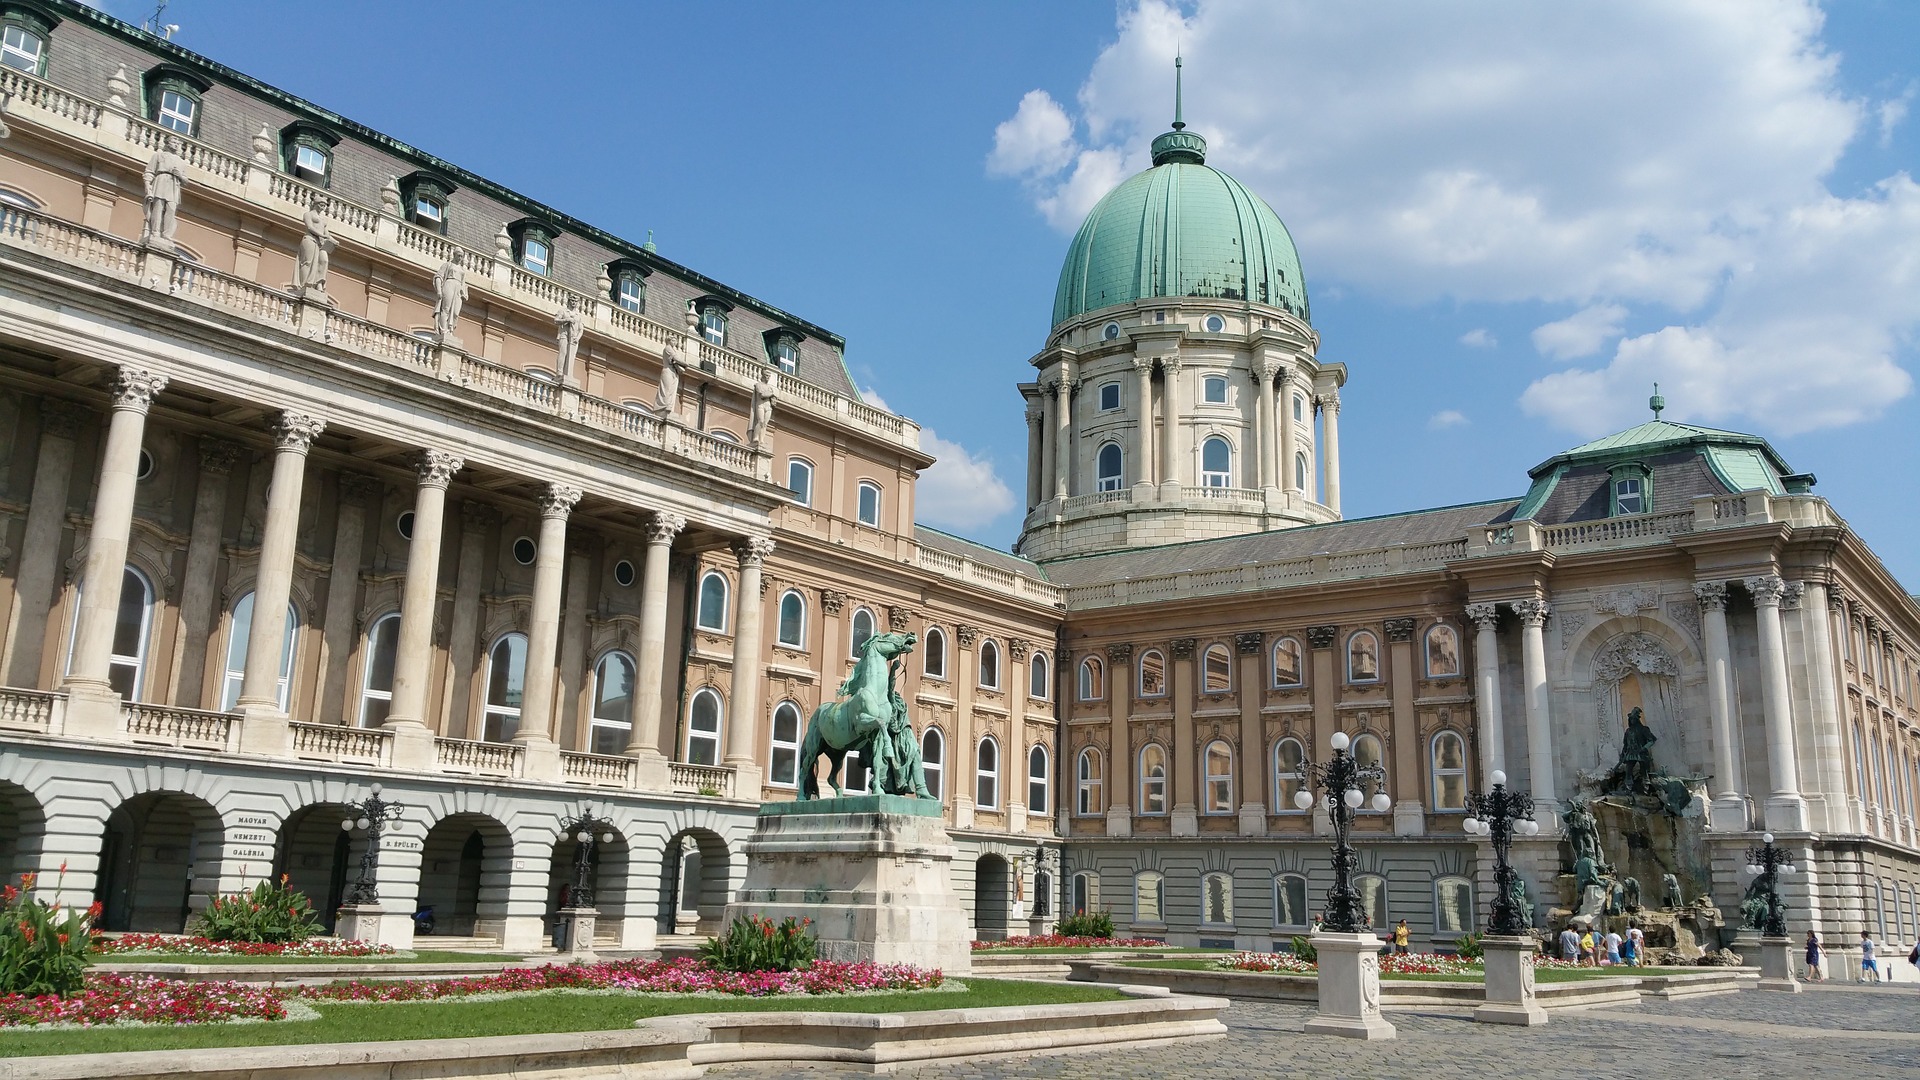 Maďarská národní galerie